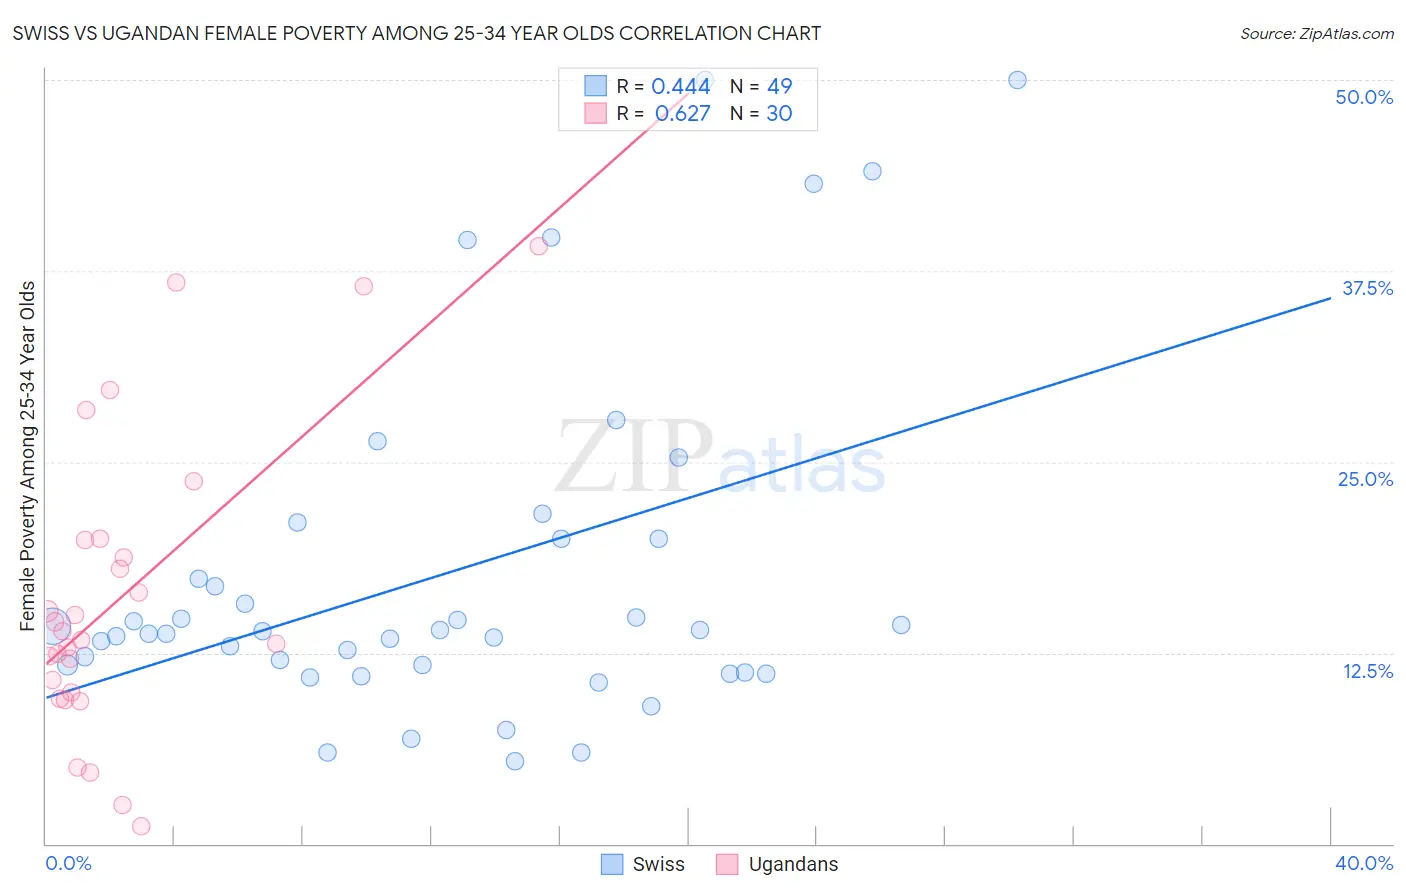 Swiss vs Ugandan Female Poverty Among 25-34 Year Olds